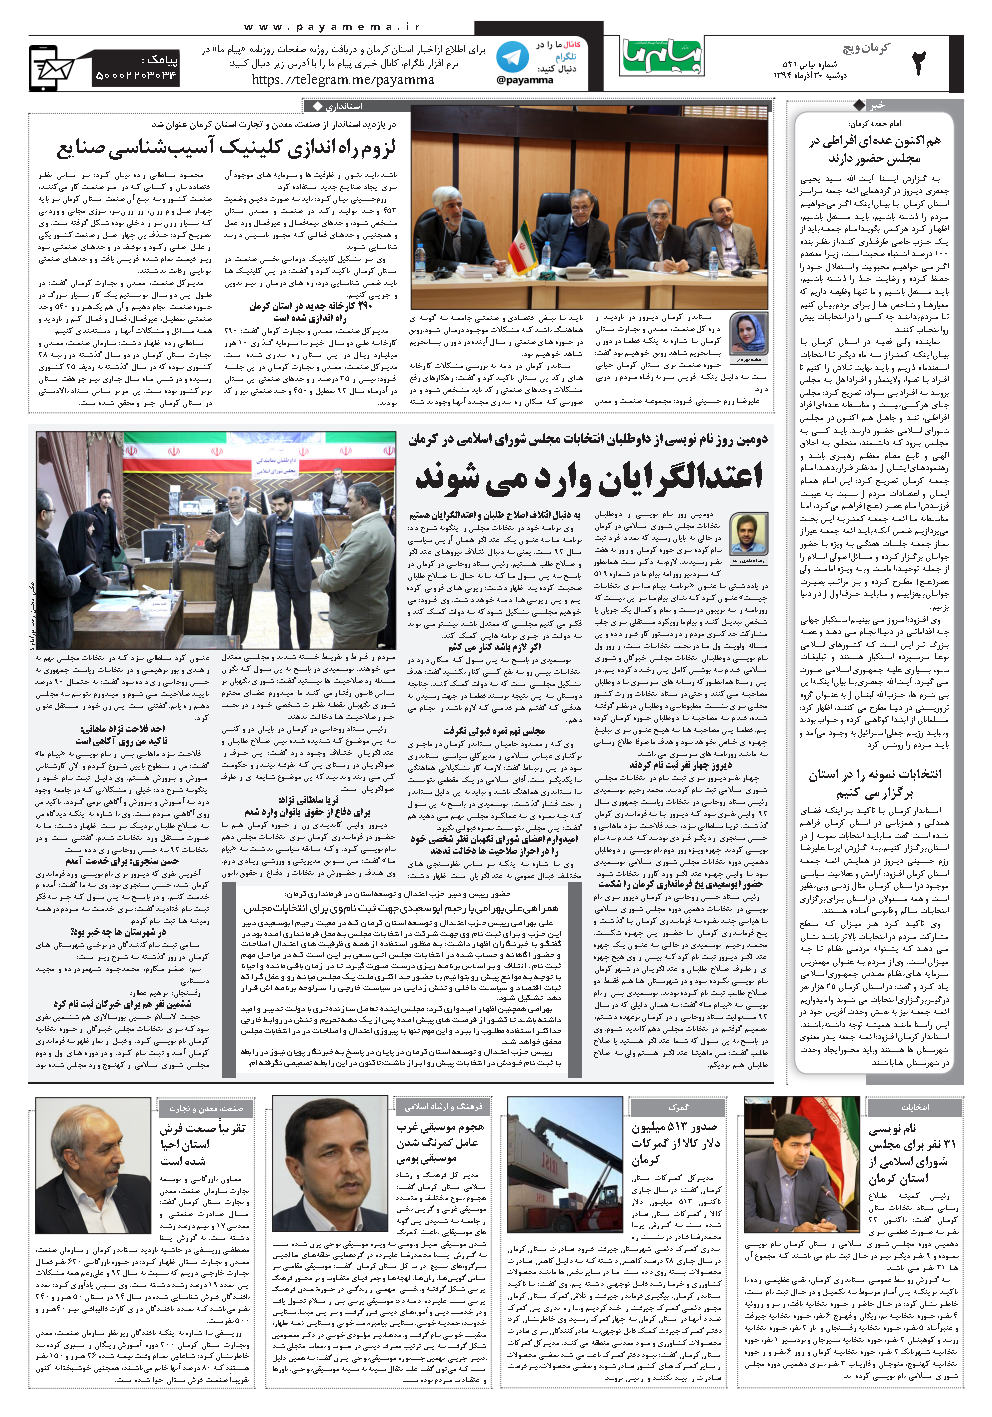 صفحه کرمان ویچ شماره 521 روزنامه پیام ما